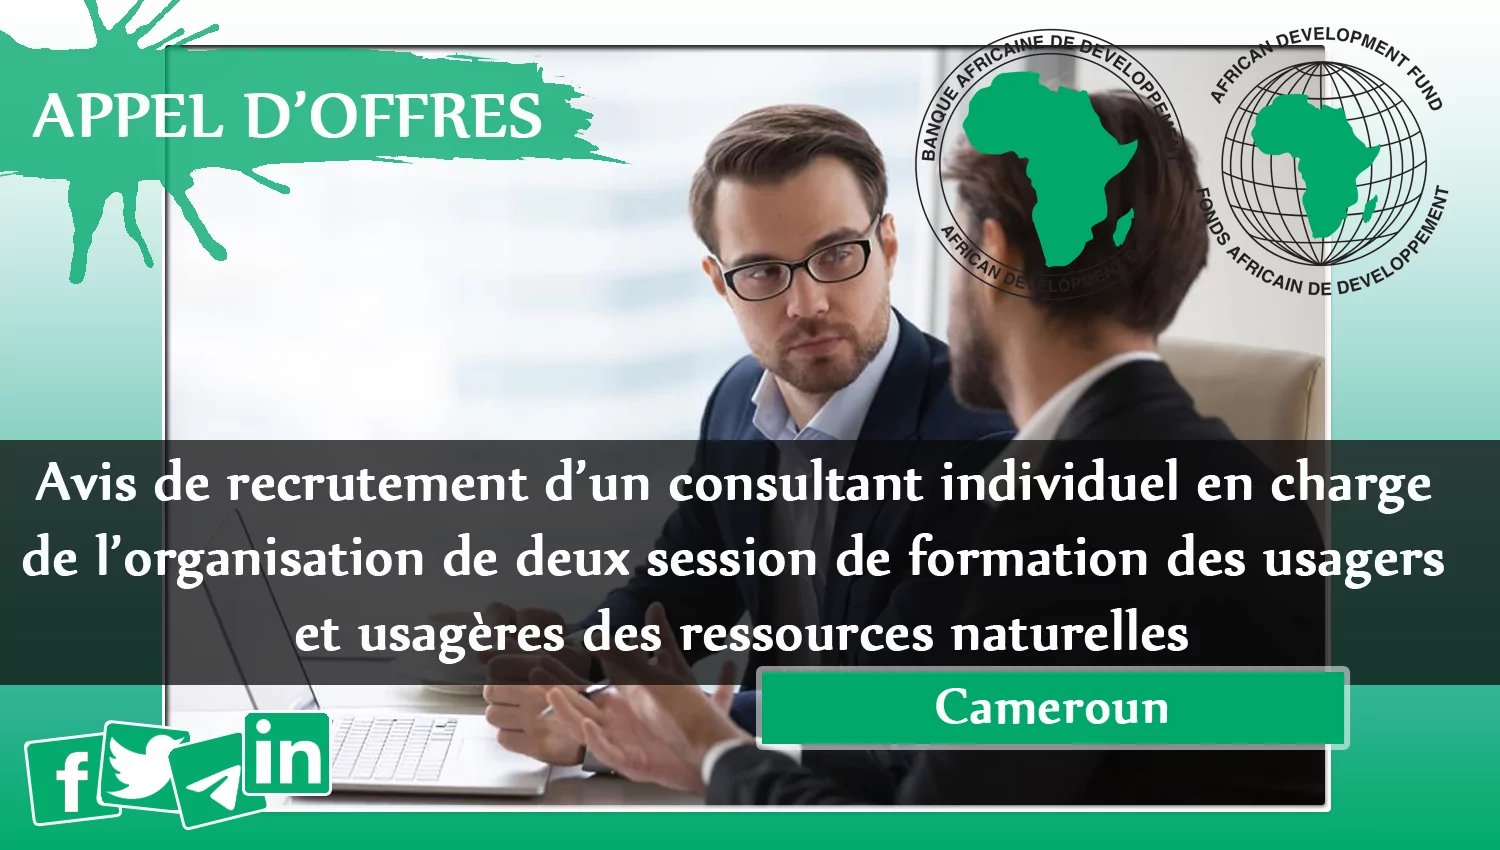 Avis de recrutement d’un consultant individuel en charge de l’organisation de deux session de formation des usagers et usagères des ressources naturelles, Cameroun